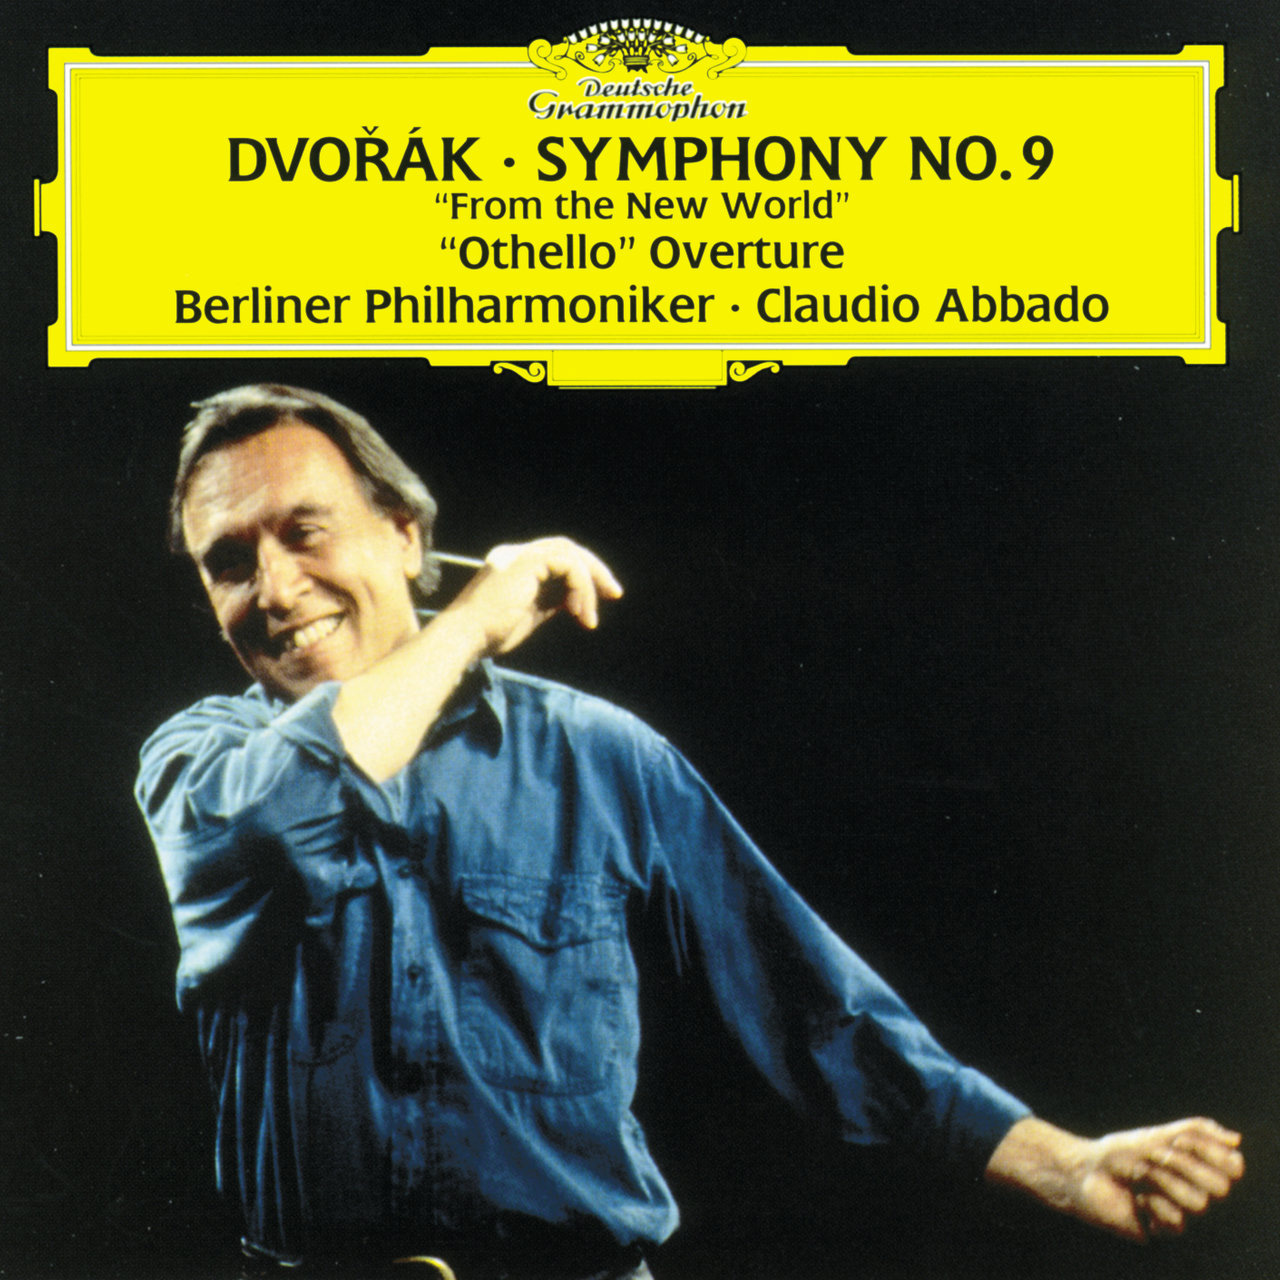 Dvork: Symphony No. 9 